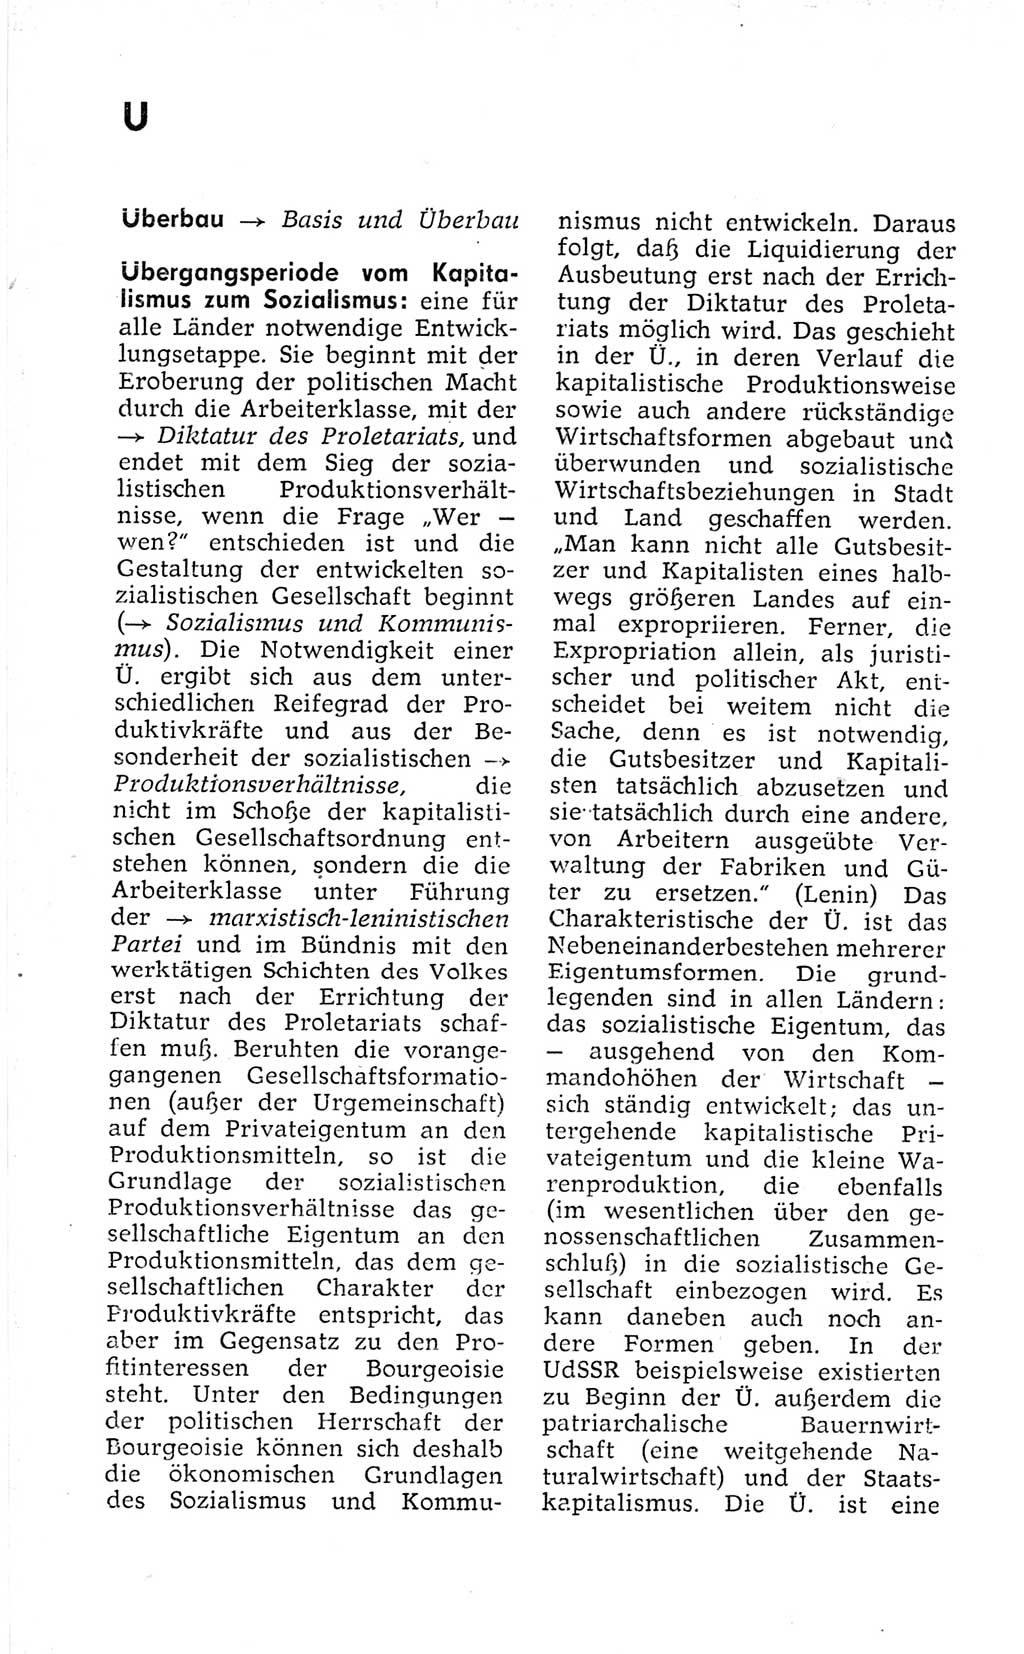 Kleines politisches Wörterbuch [Deutsche Demokratische Republik (DDR)] 1973, Seite 860 (Kl. pol. Wb. DDR 1973, S. 860)